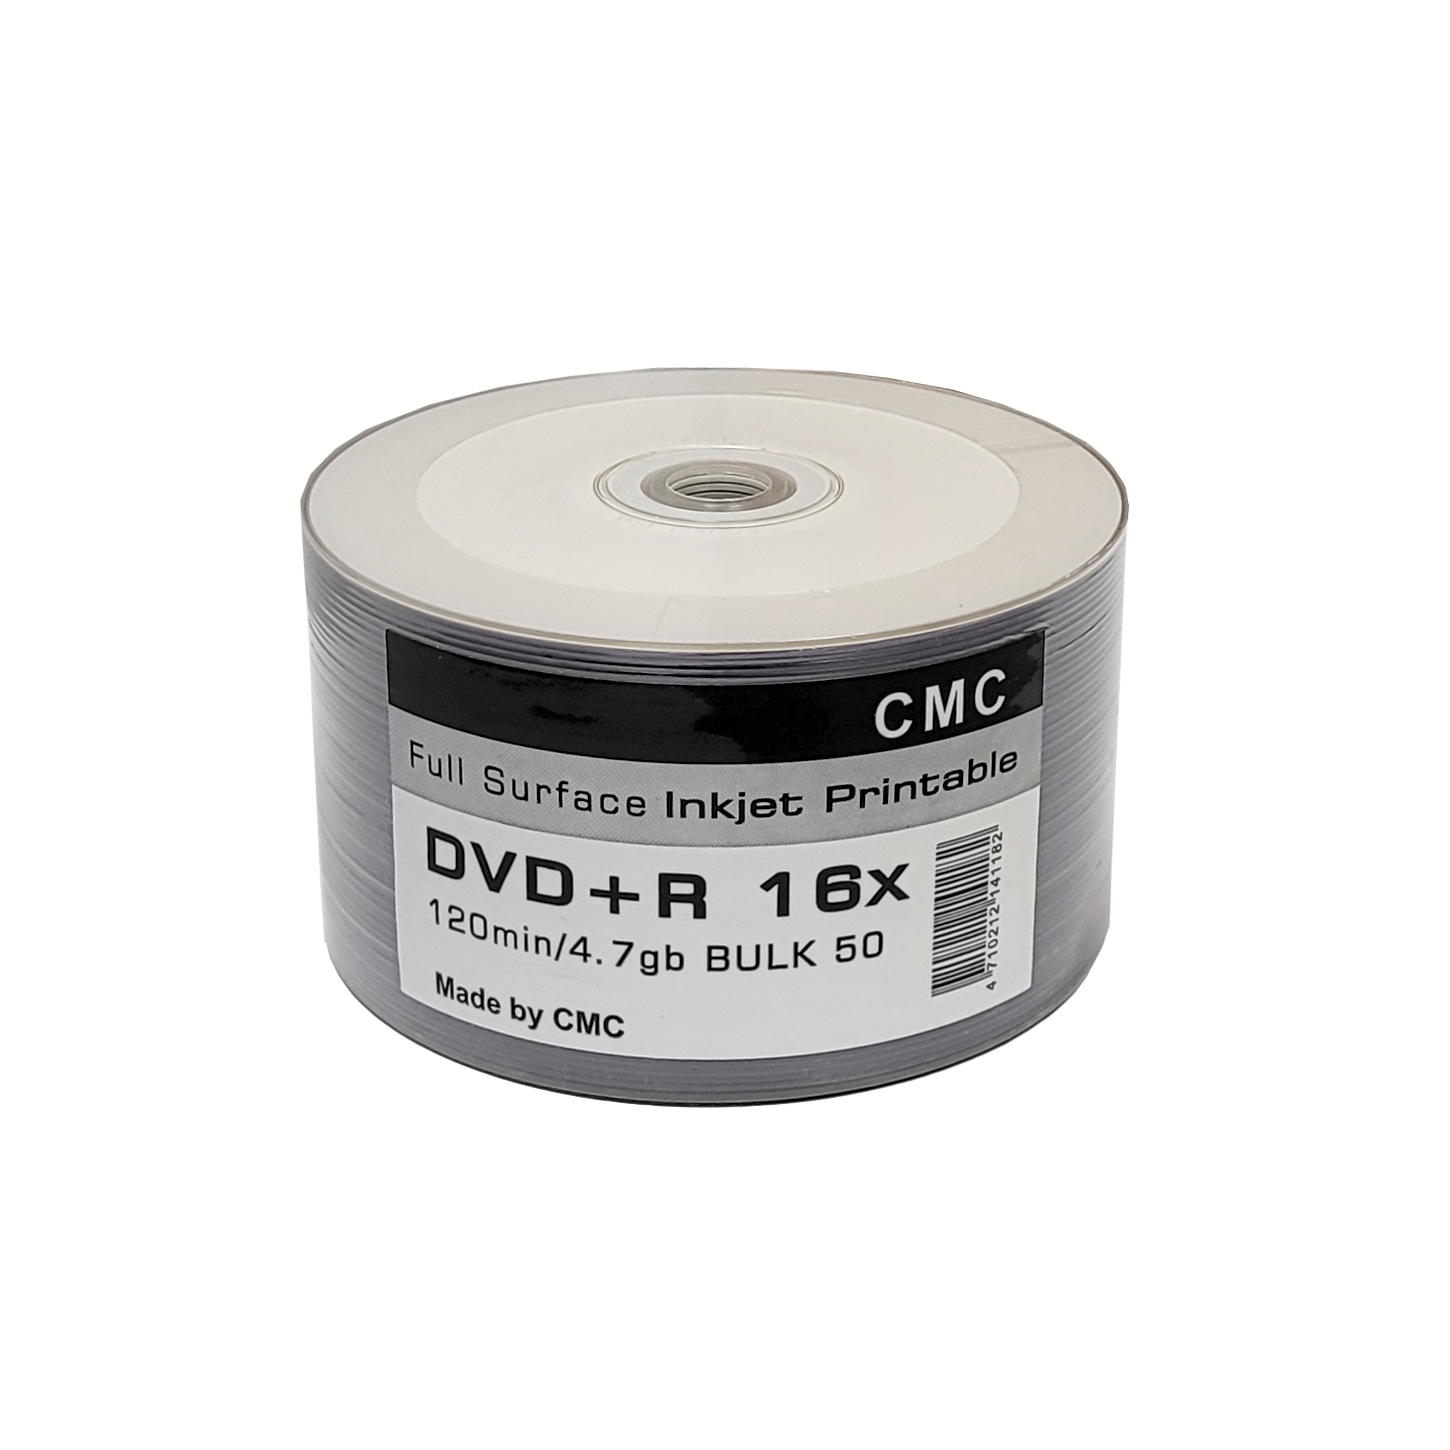 

Диск DVD+R CMC Printable 50 штук / Болванка 4.7GB, 16x с поверхностью для струйной печати